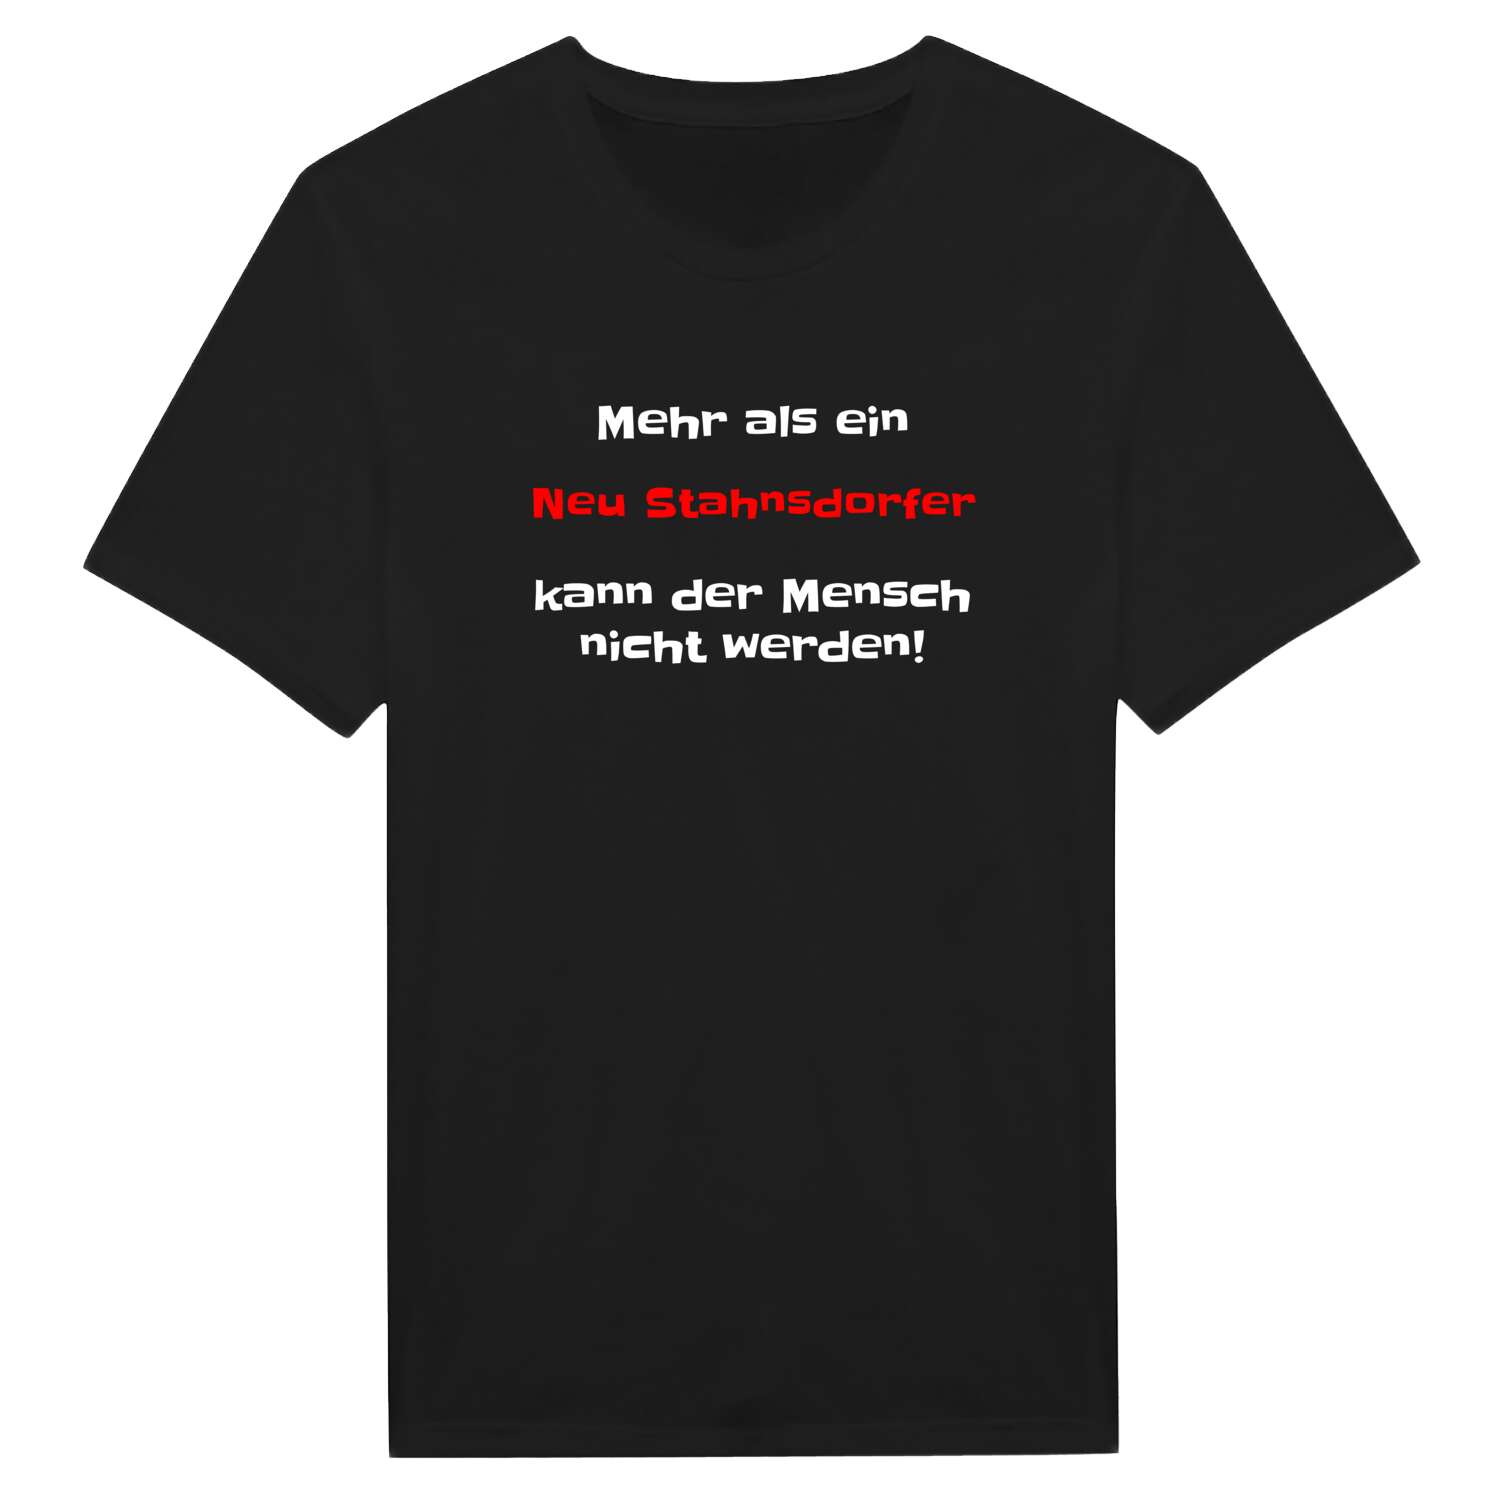 Neu Stahnsdorf T-Shirt »Mehr als ein«